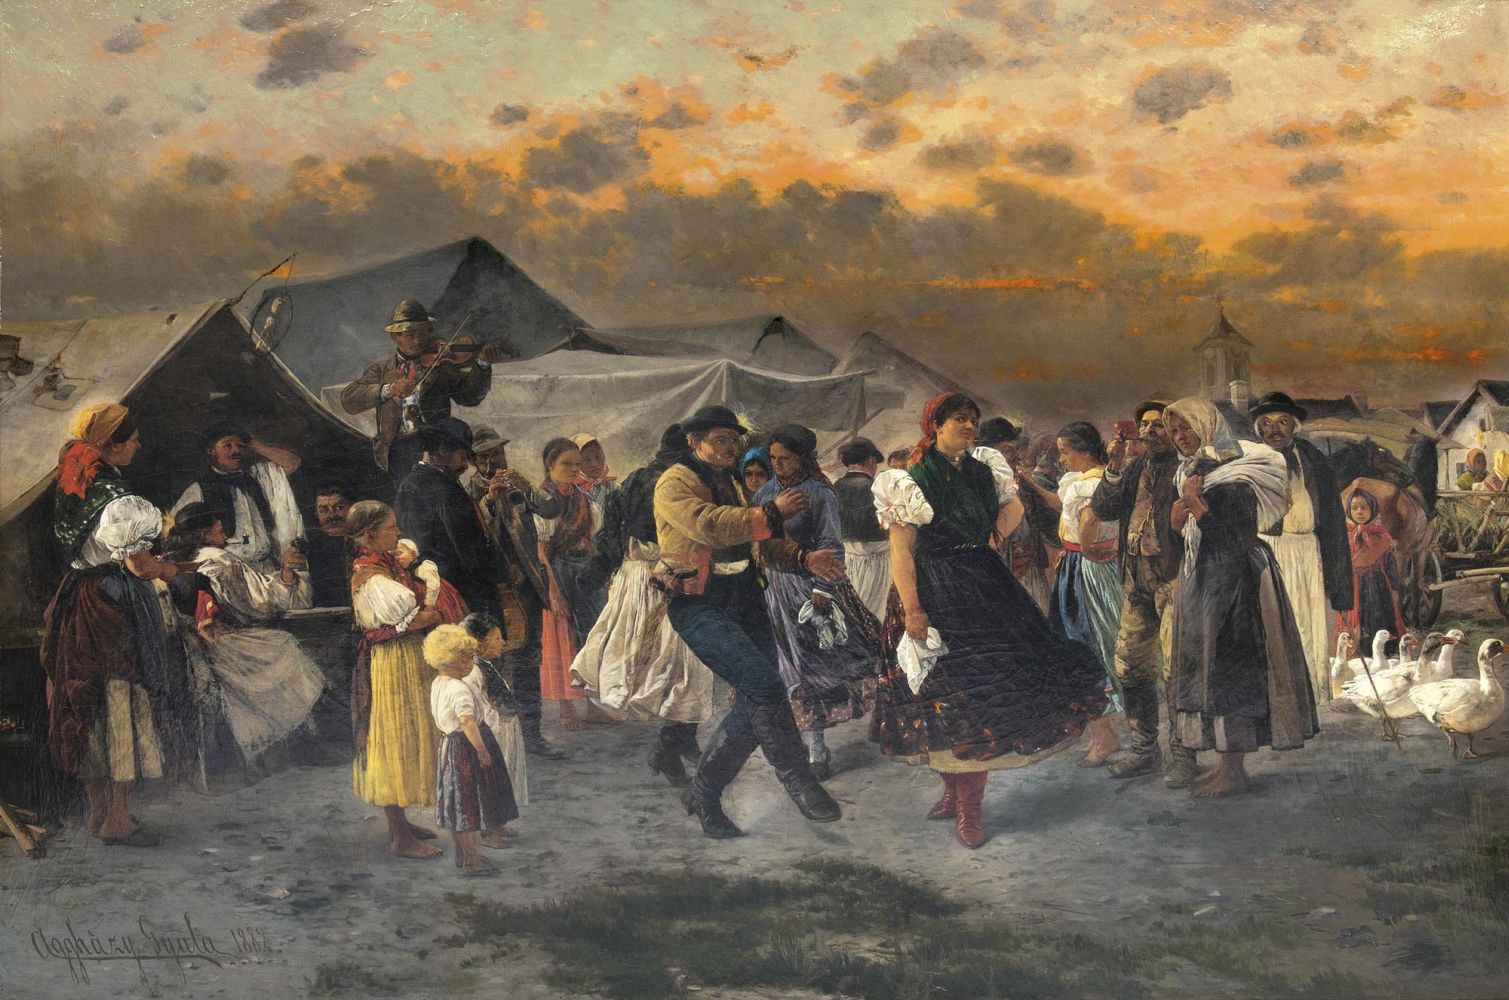 Dancing at the Fair